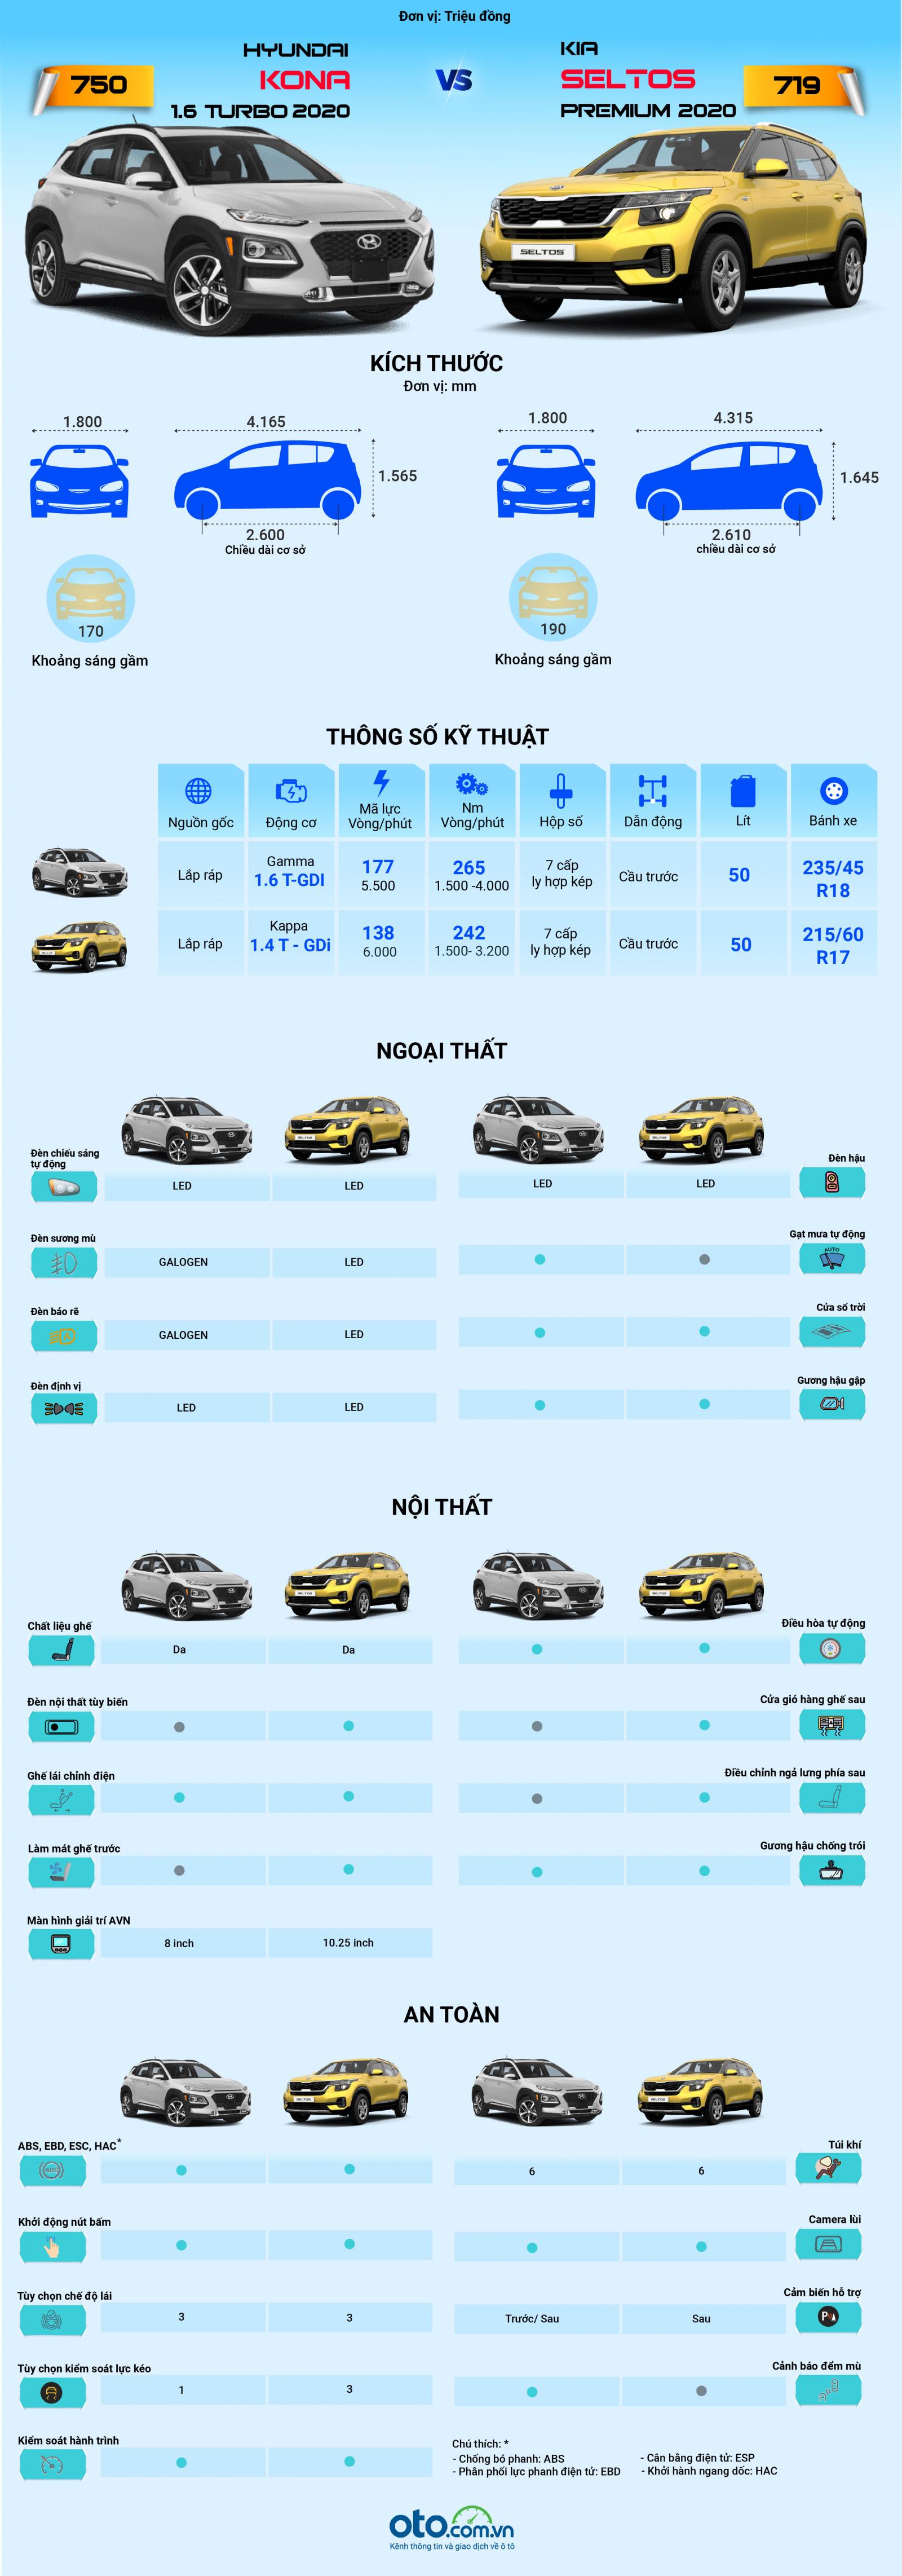 So sánh chênh lệch trang bị giữa Hyundai Kona và Kia Seltos 2020.